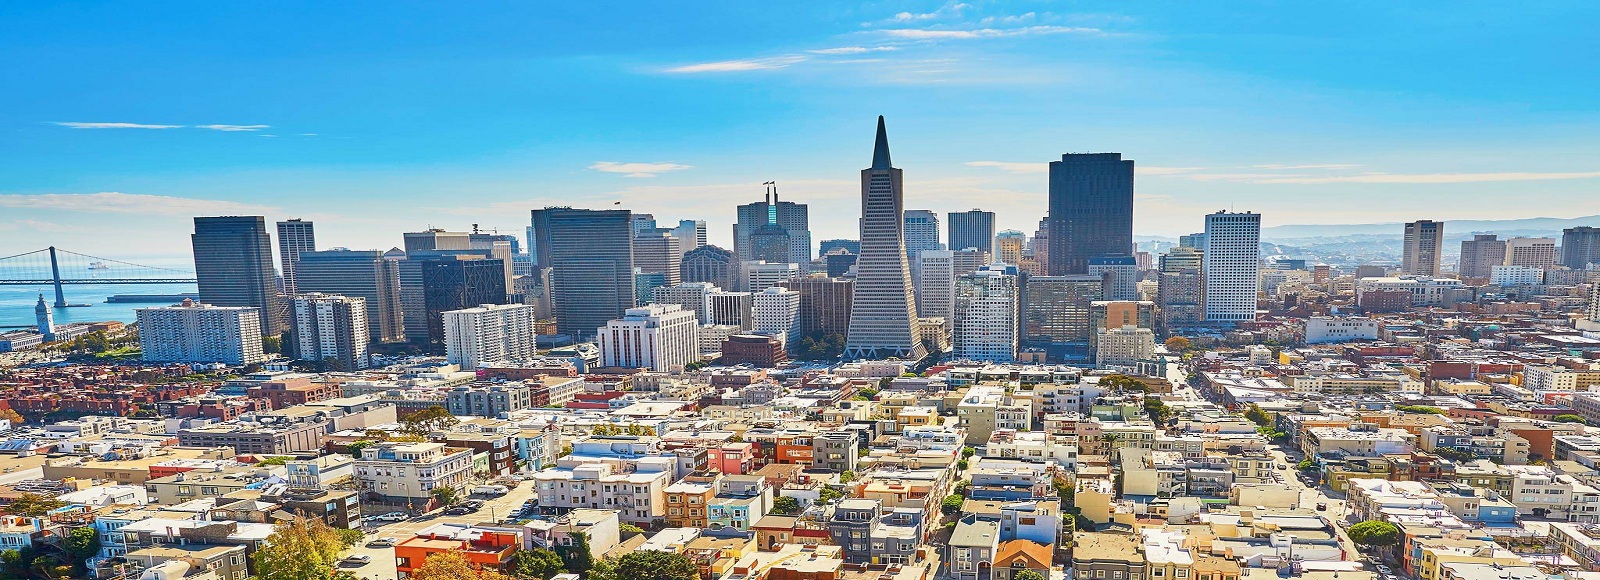 Ofertas de Traslados en San Francisco. Traslados económicos en San Francisco 